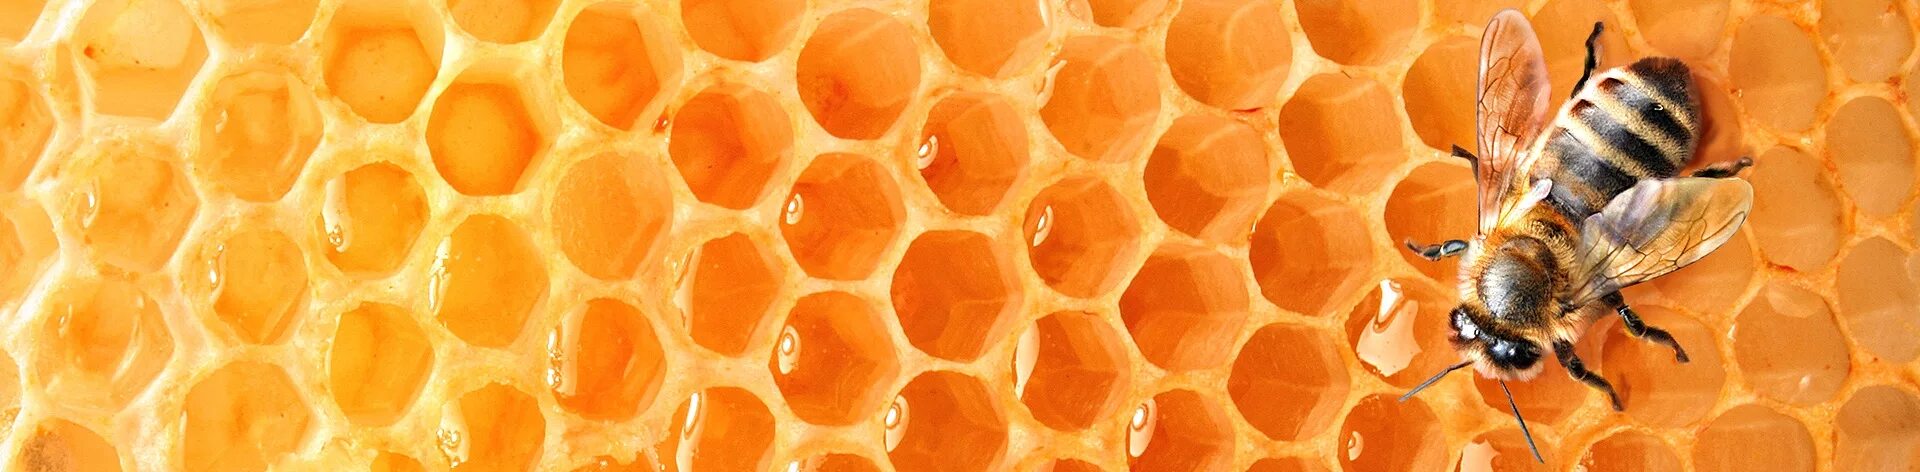 Honey vk. Соты пчелиные. Пчела на сотах. Пчелиные соты с медом. Пчелы и мед.